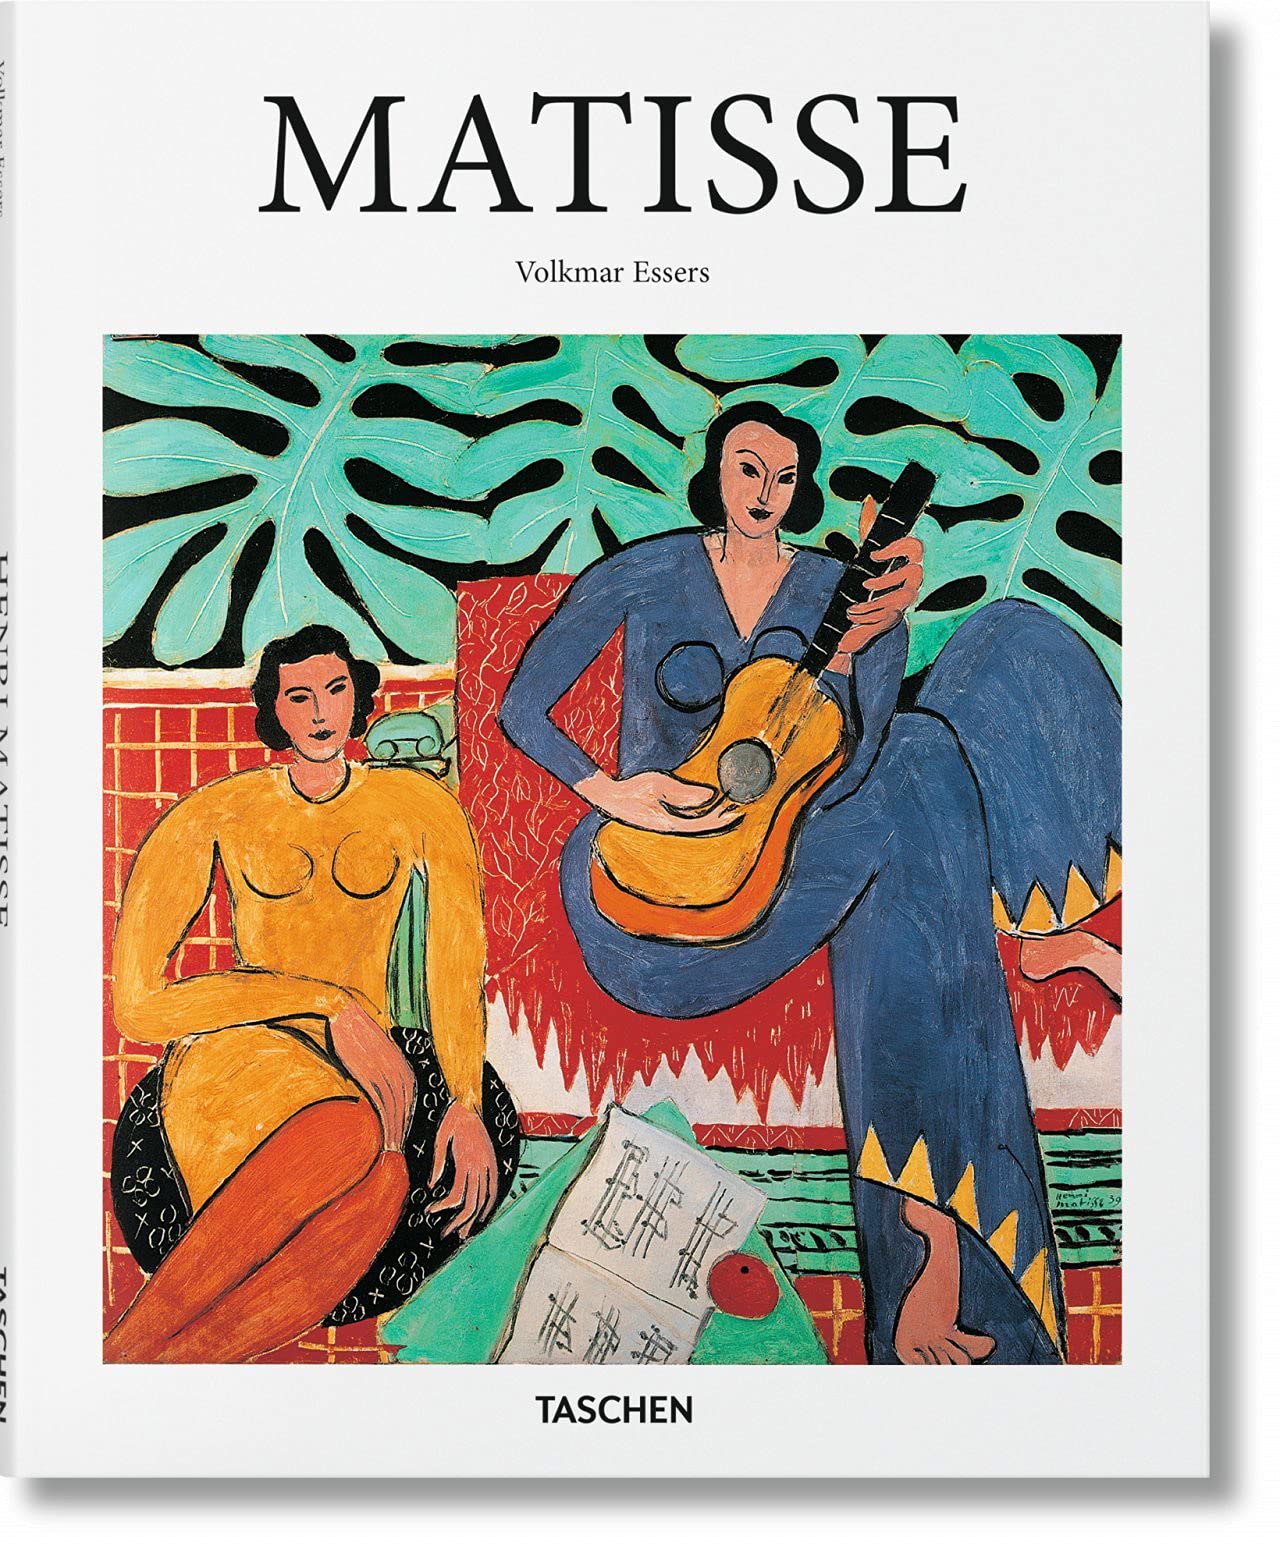 【现货】野兽派画家马蒂斯Matisse绘画作品精选 艺术画册作品集 TASCHEN出版社 英文原版绘画作品集画册画集